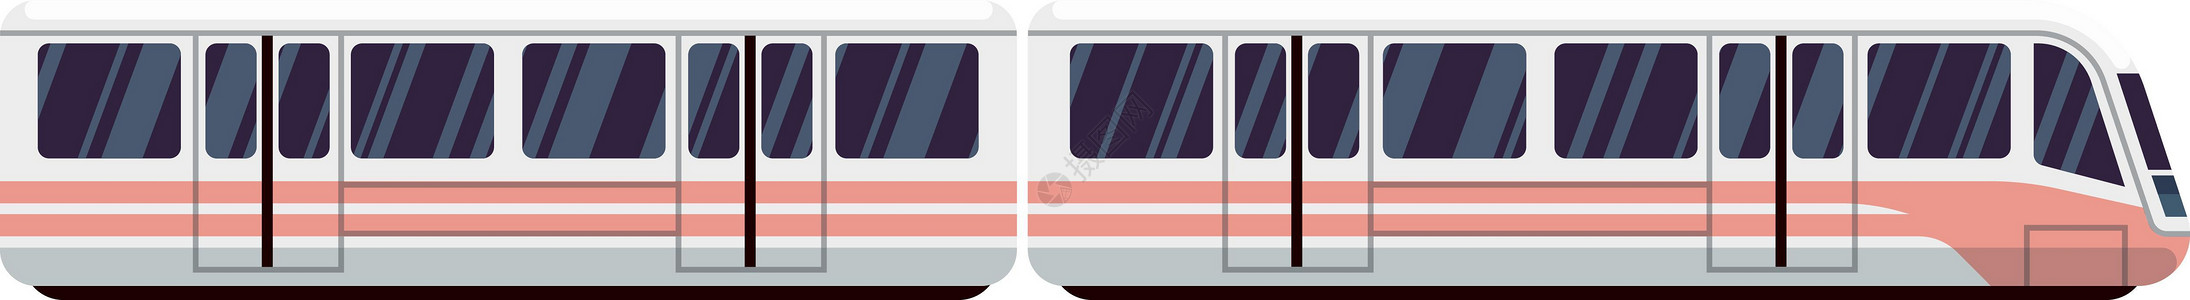 城际列车图标 现代电动地铁或铁路运输插画